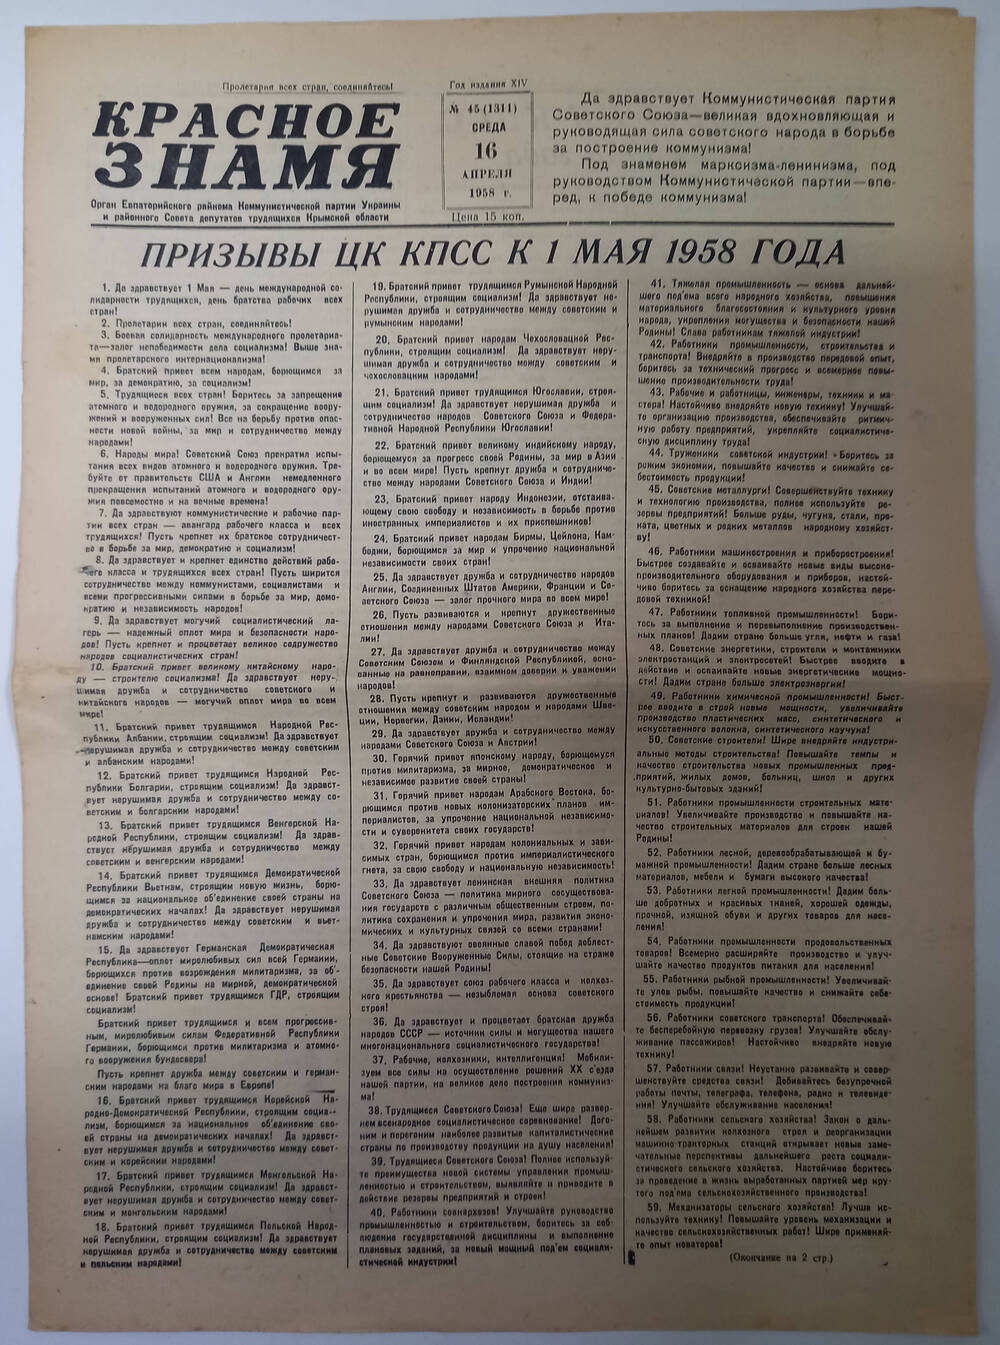 Газета Красное знамя №45(1311) от 16.04.1958 г.